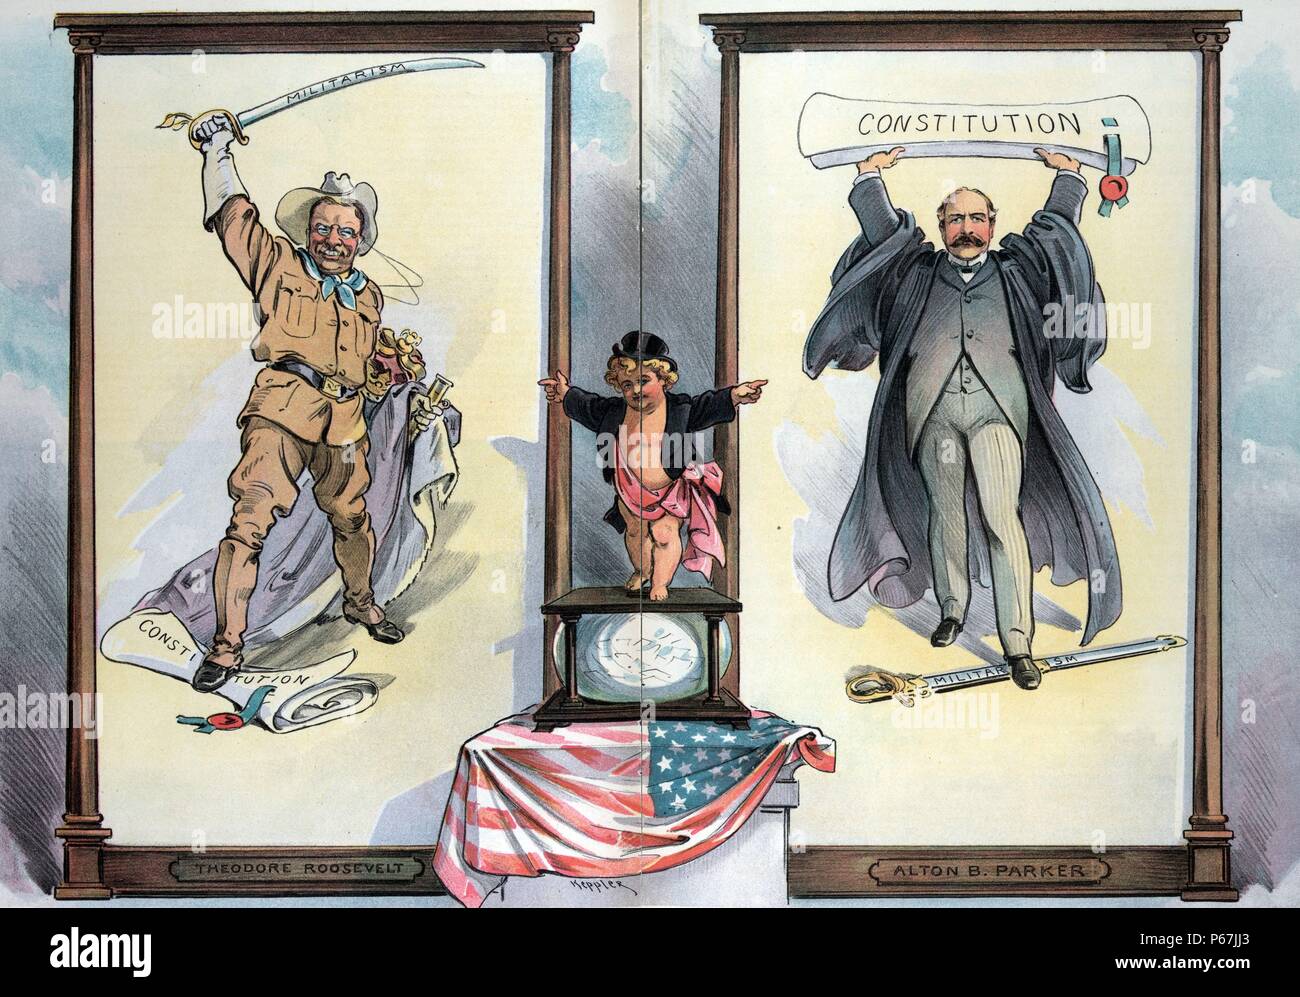 "Treffen Sie Ihre Wahl, Herren'' Puck stehen auf einer Wahlurne zwischen Präsident Theodore Roosevelt, der einen Fuß auf der "Verfassung", winkt ein Schwert bin ilitarism' in einer bedrohlichen Weise über seinem Kopf gekennzeichnet, und königlichen Gewändern und eine Krone mit seinem linken Arm, und Alton B. Parker, der einen Fuß auf ein Schwert als 'Militarism" und hält aloft "Verfassung". Stockfoto